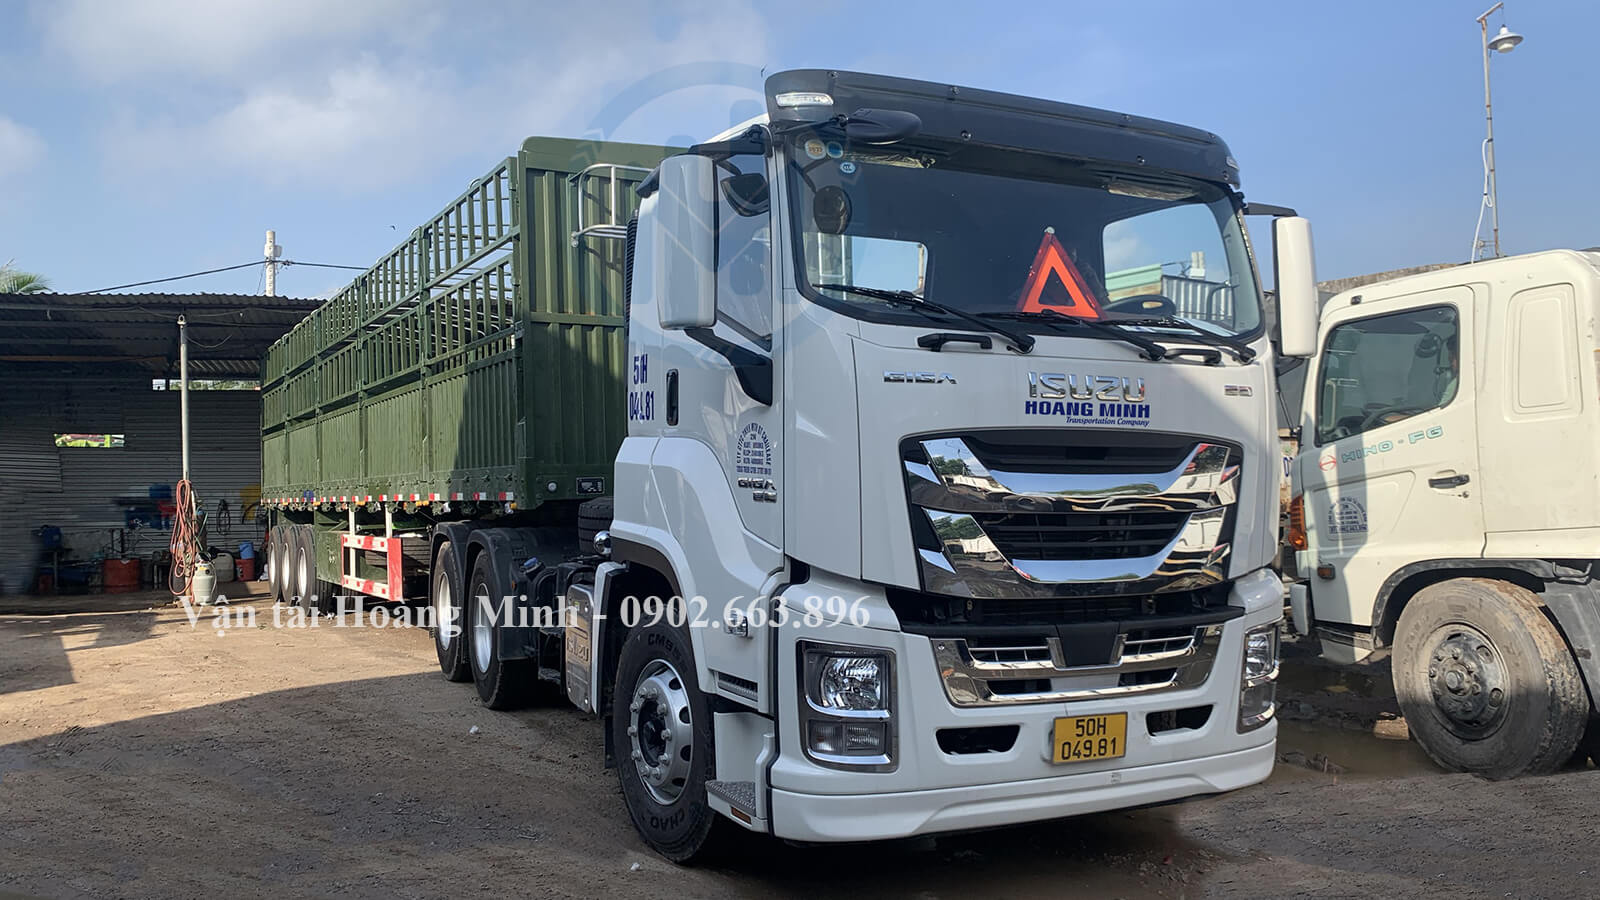 Vận tải Hoàng Minh cho thuê xe tải chở hàng KCN Tam Phước các loại xe nào?